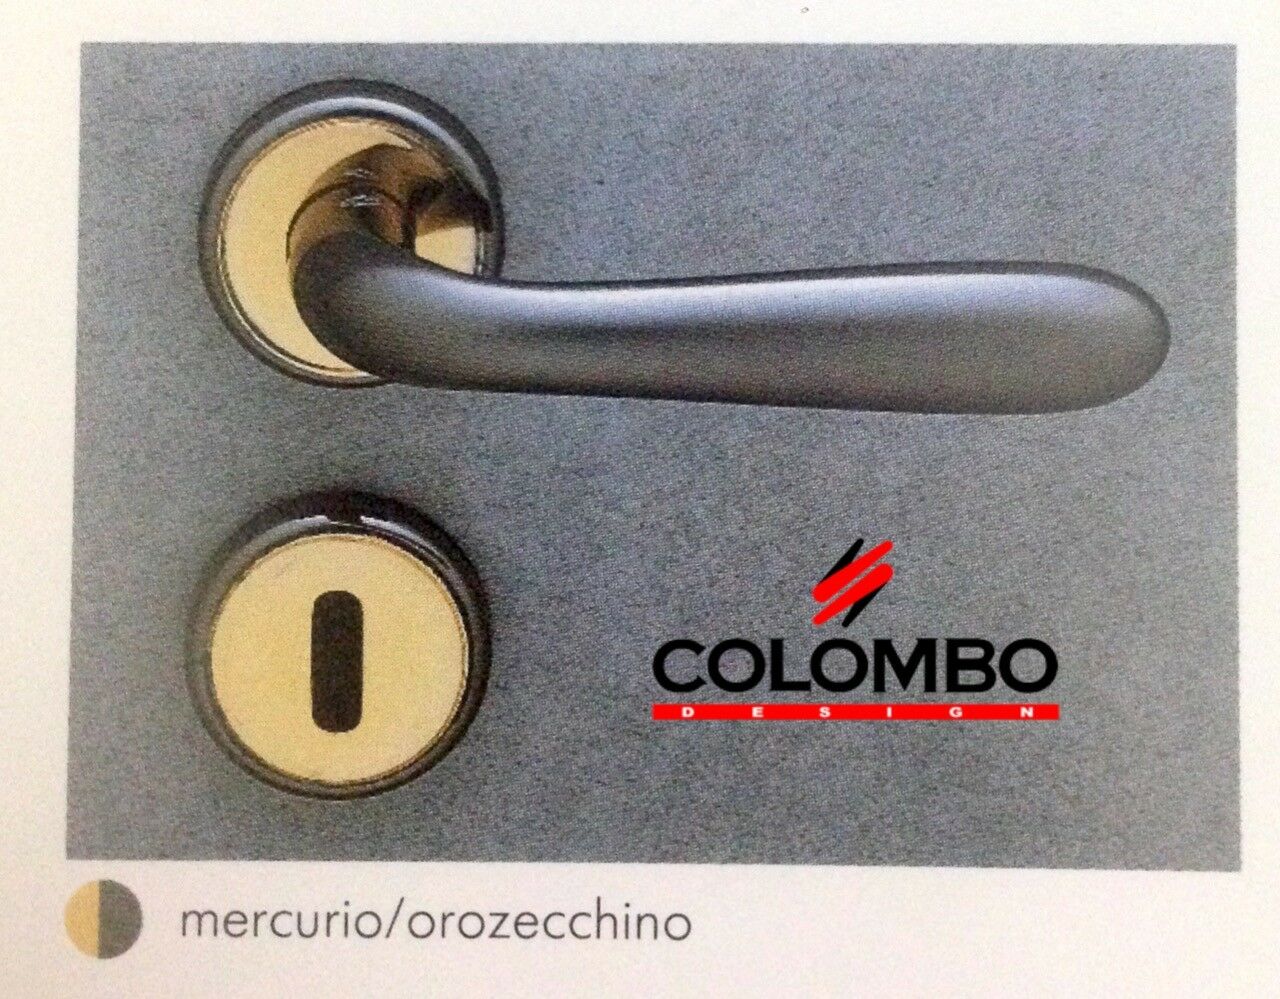 MANIGLIA PER PORTA COLOMBO DESIGN ROBOT CD41R MERCURIO + ORO ZECCHINO